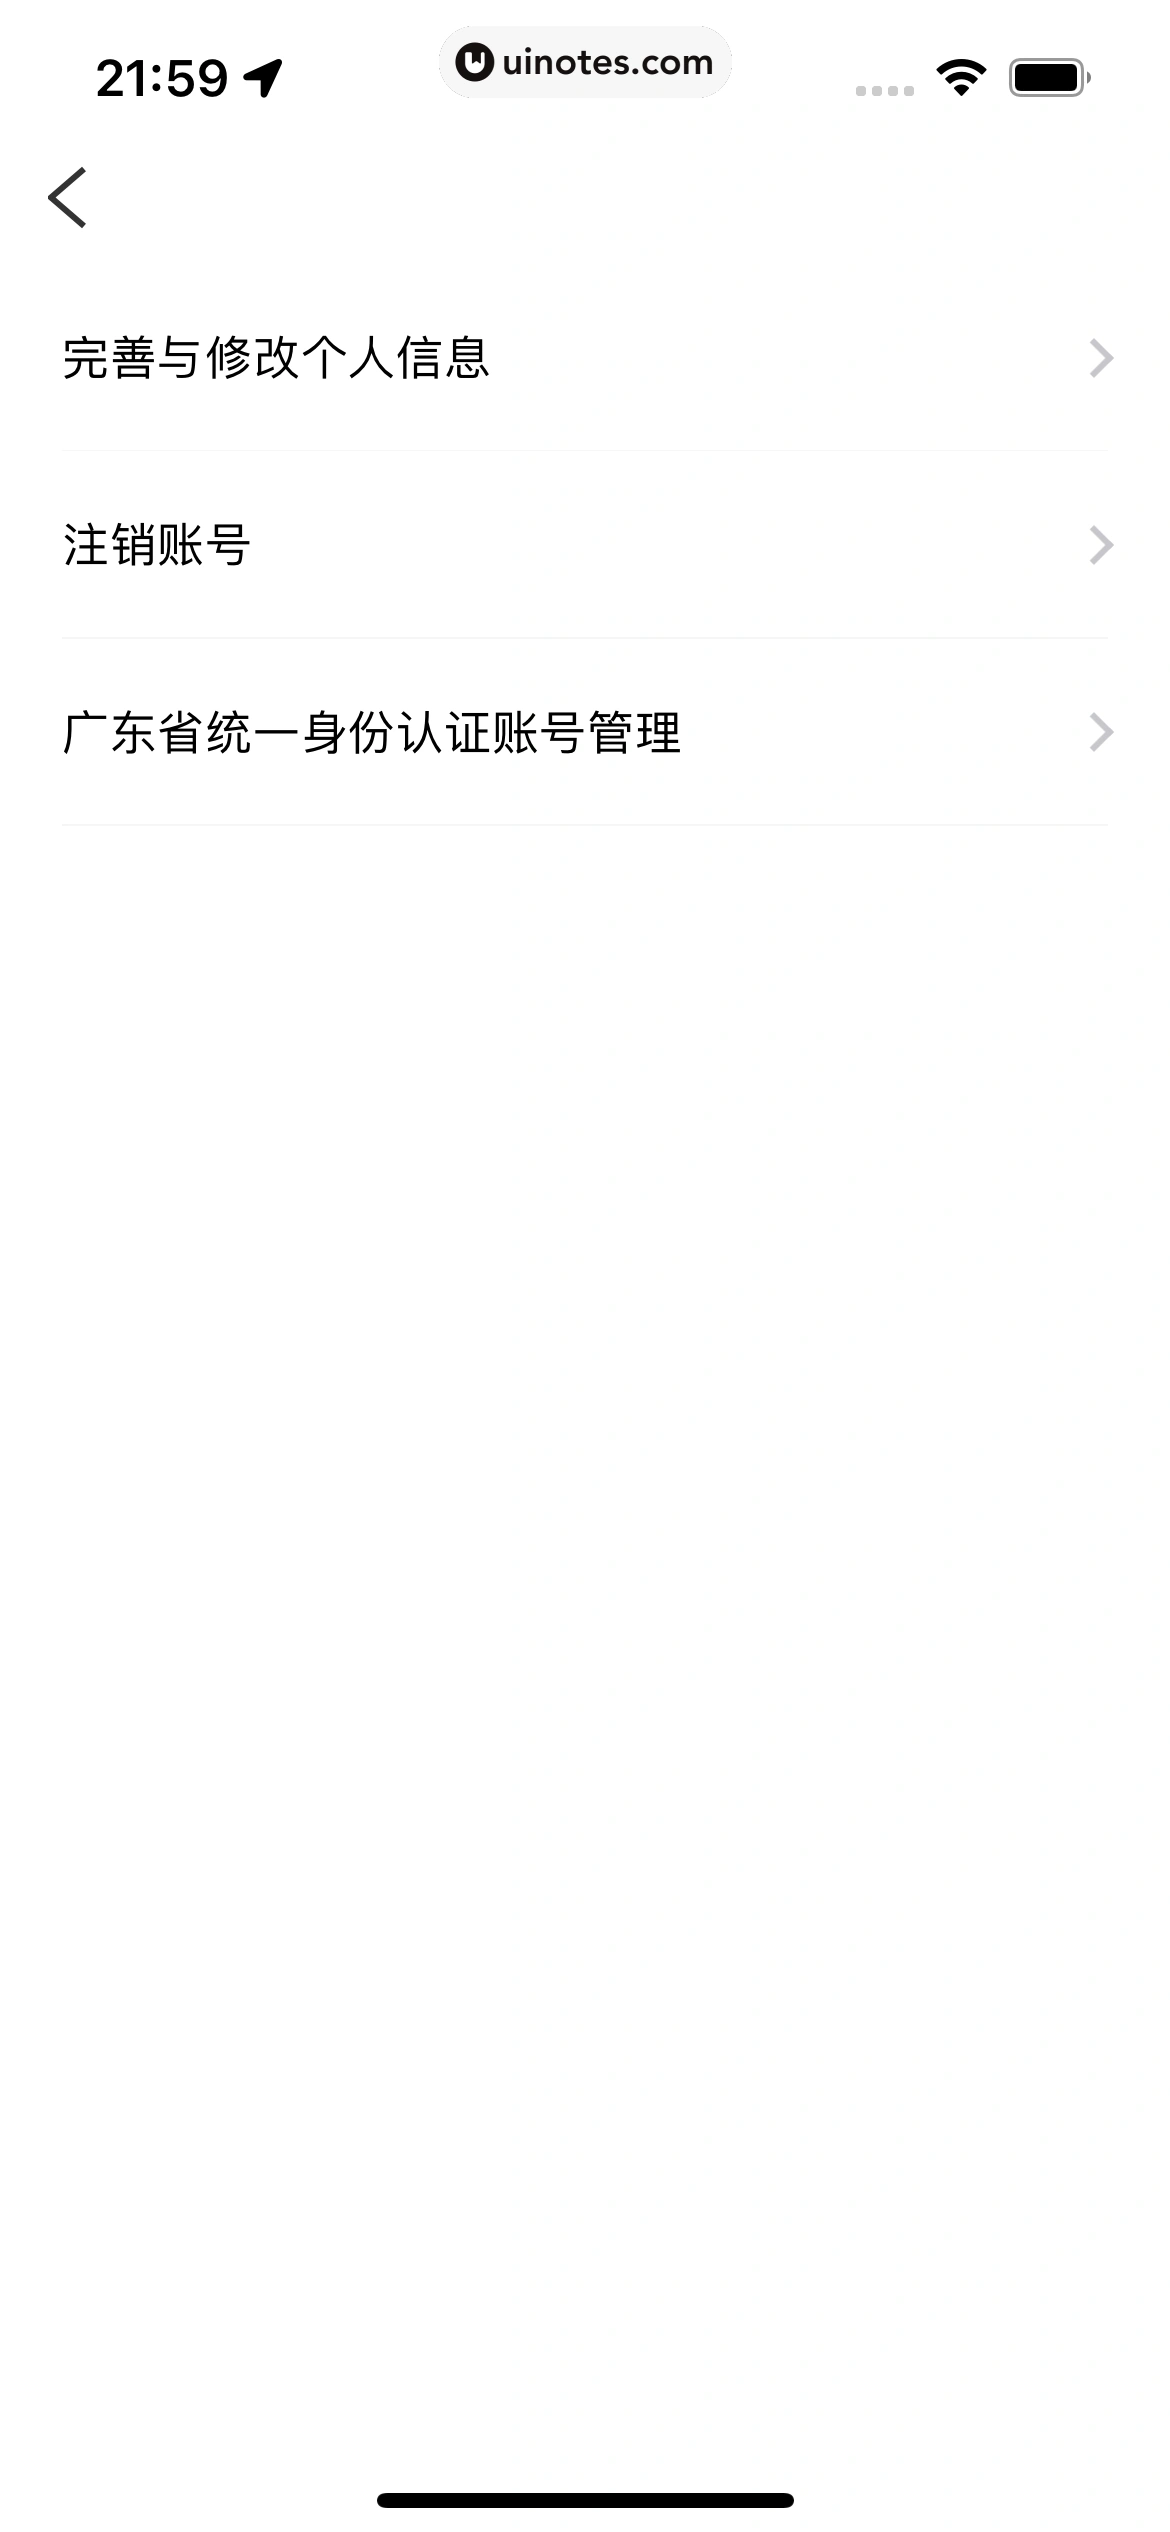 粤省事 App 截图 137 - UI Notes